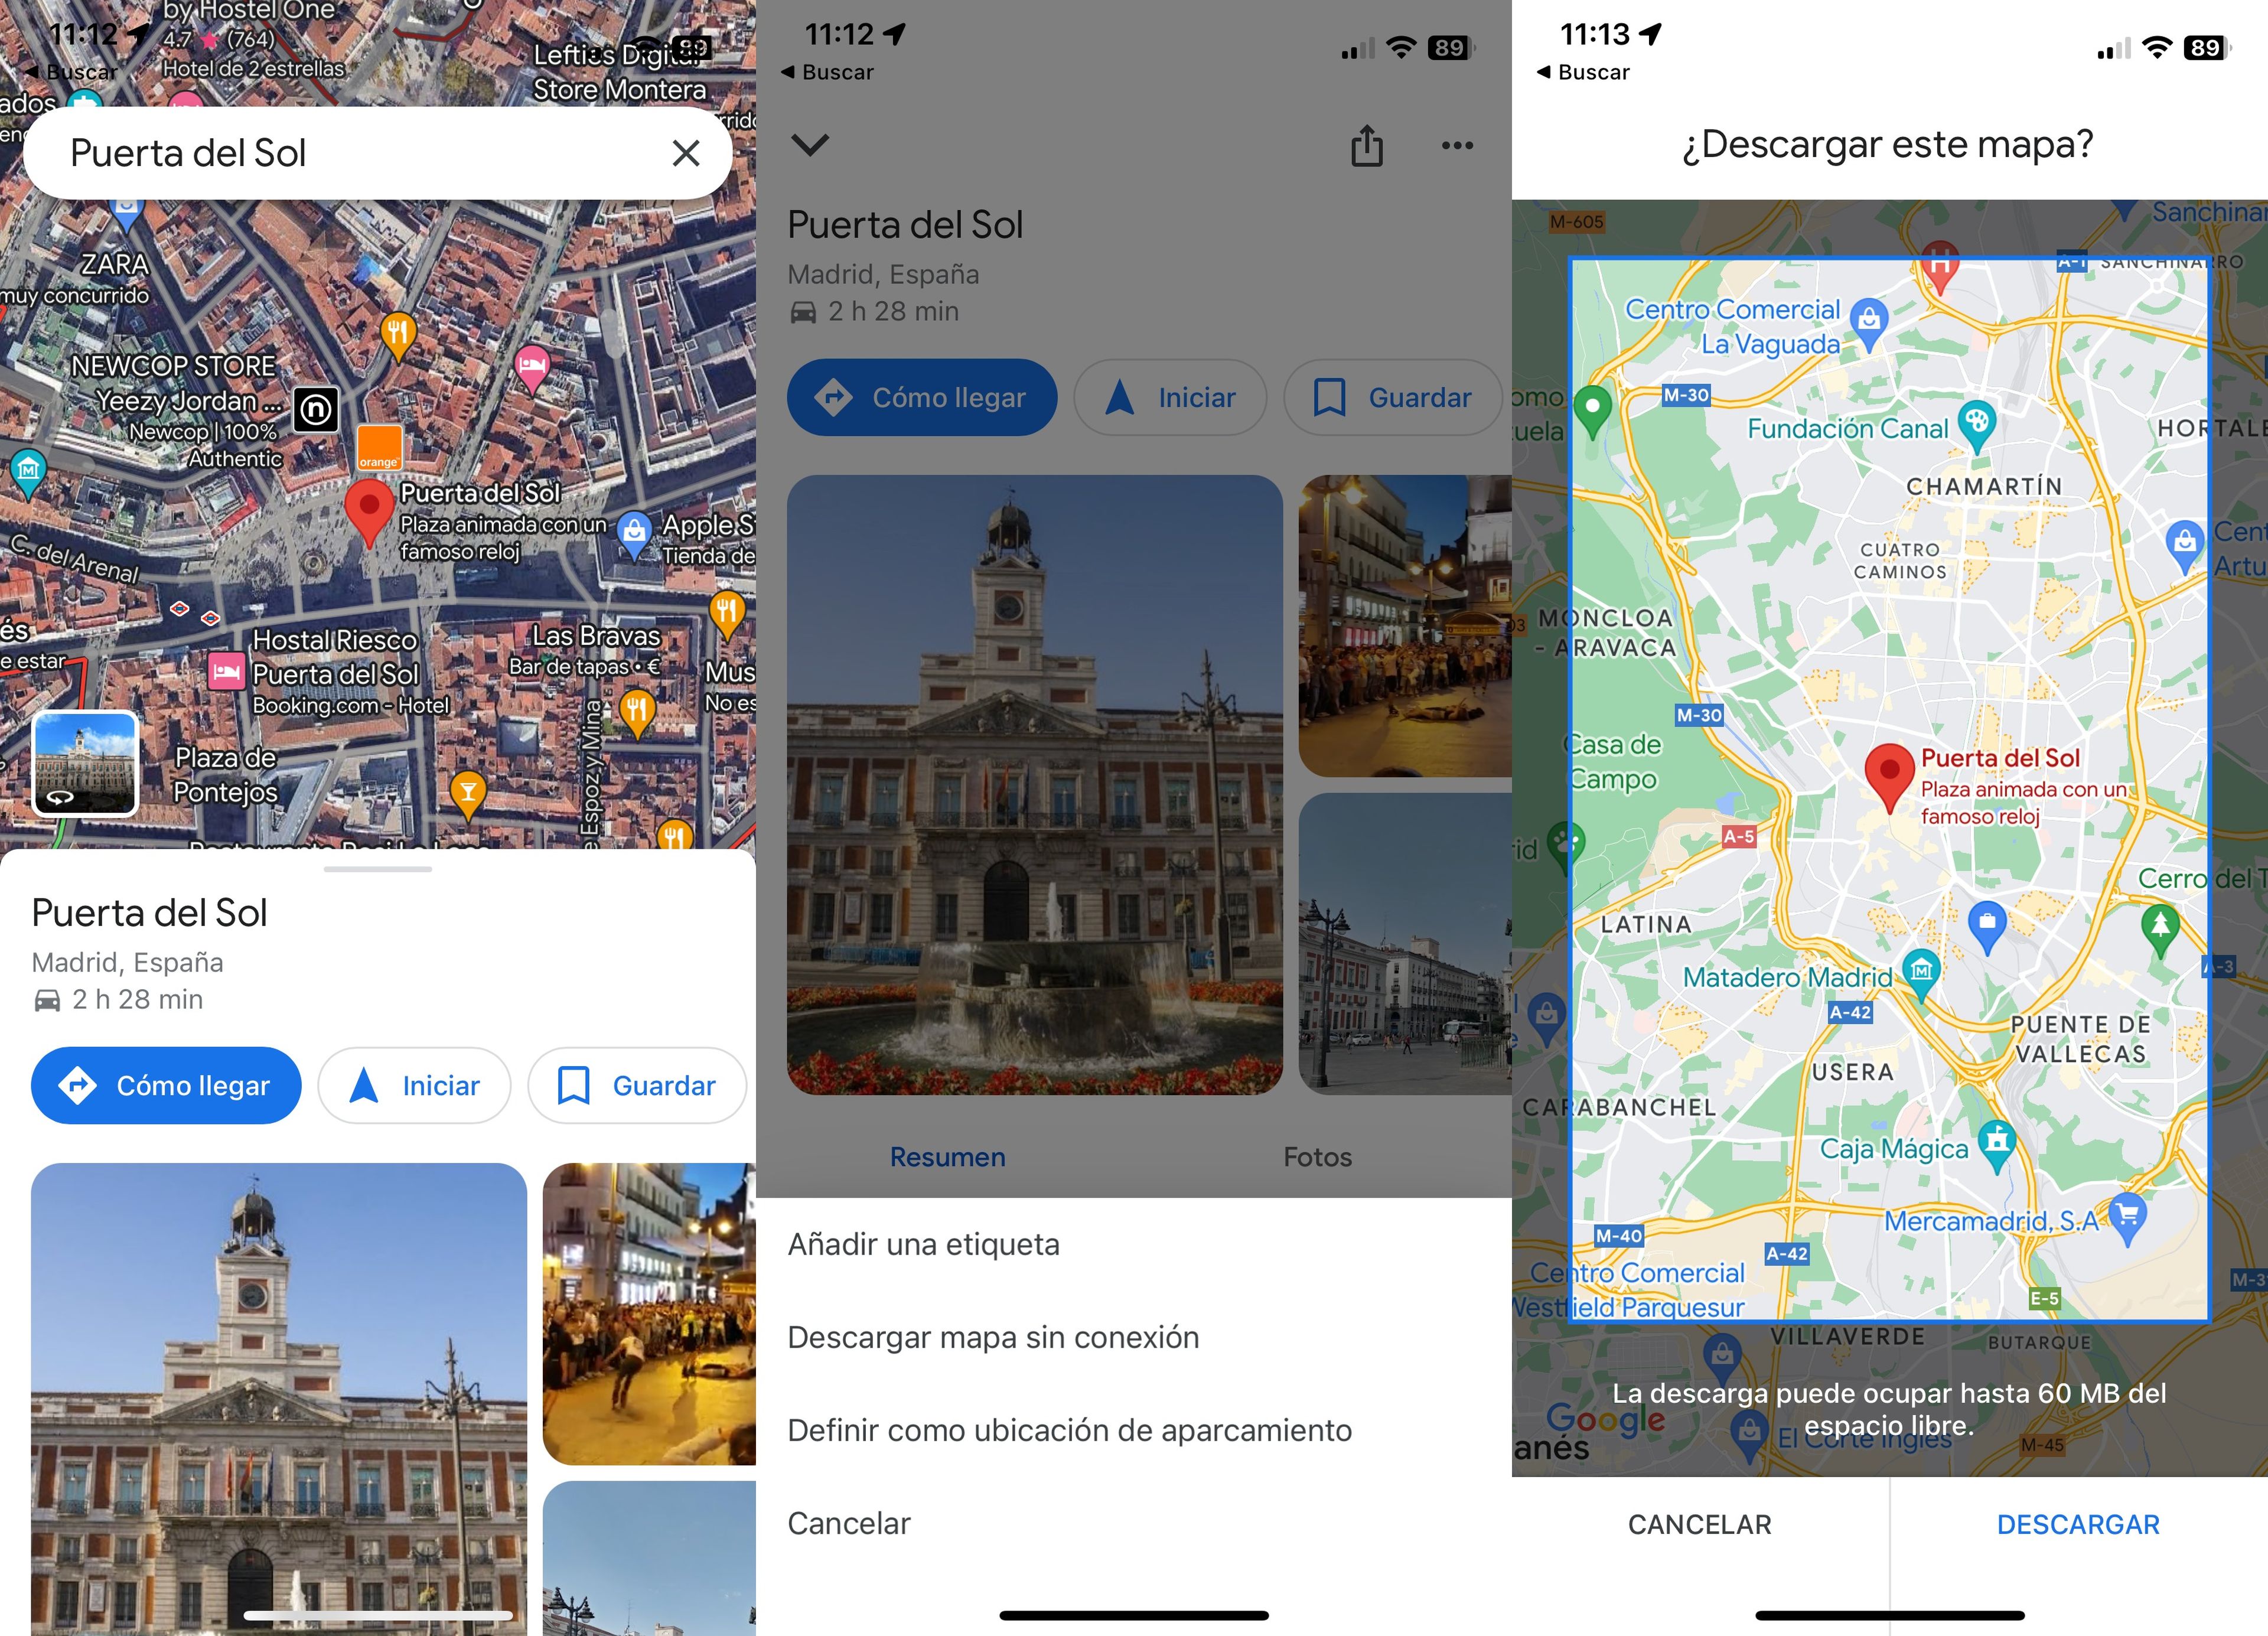 Descargar mapas sin conexión en Google Maps